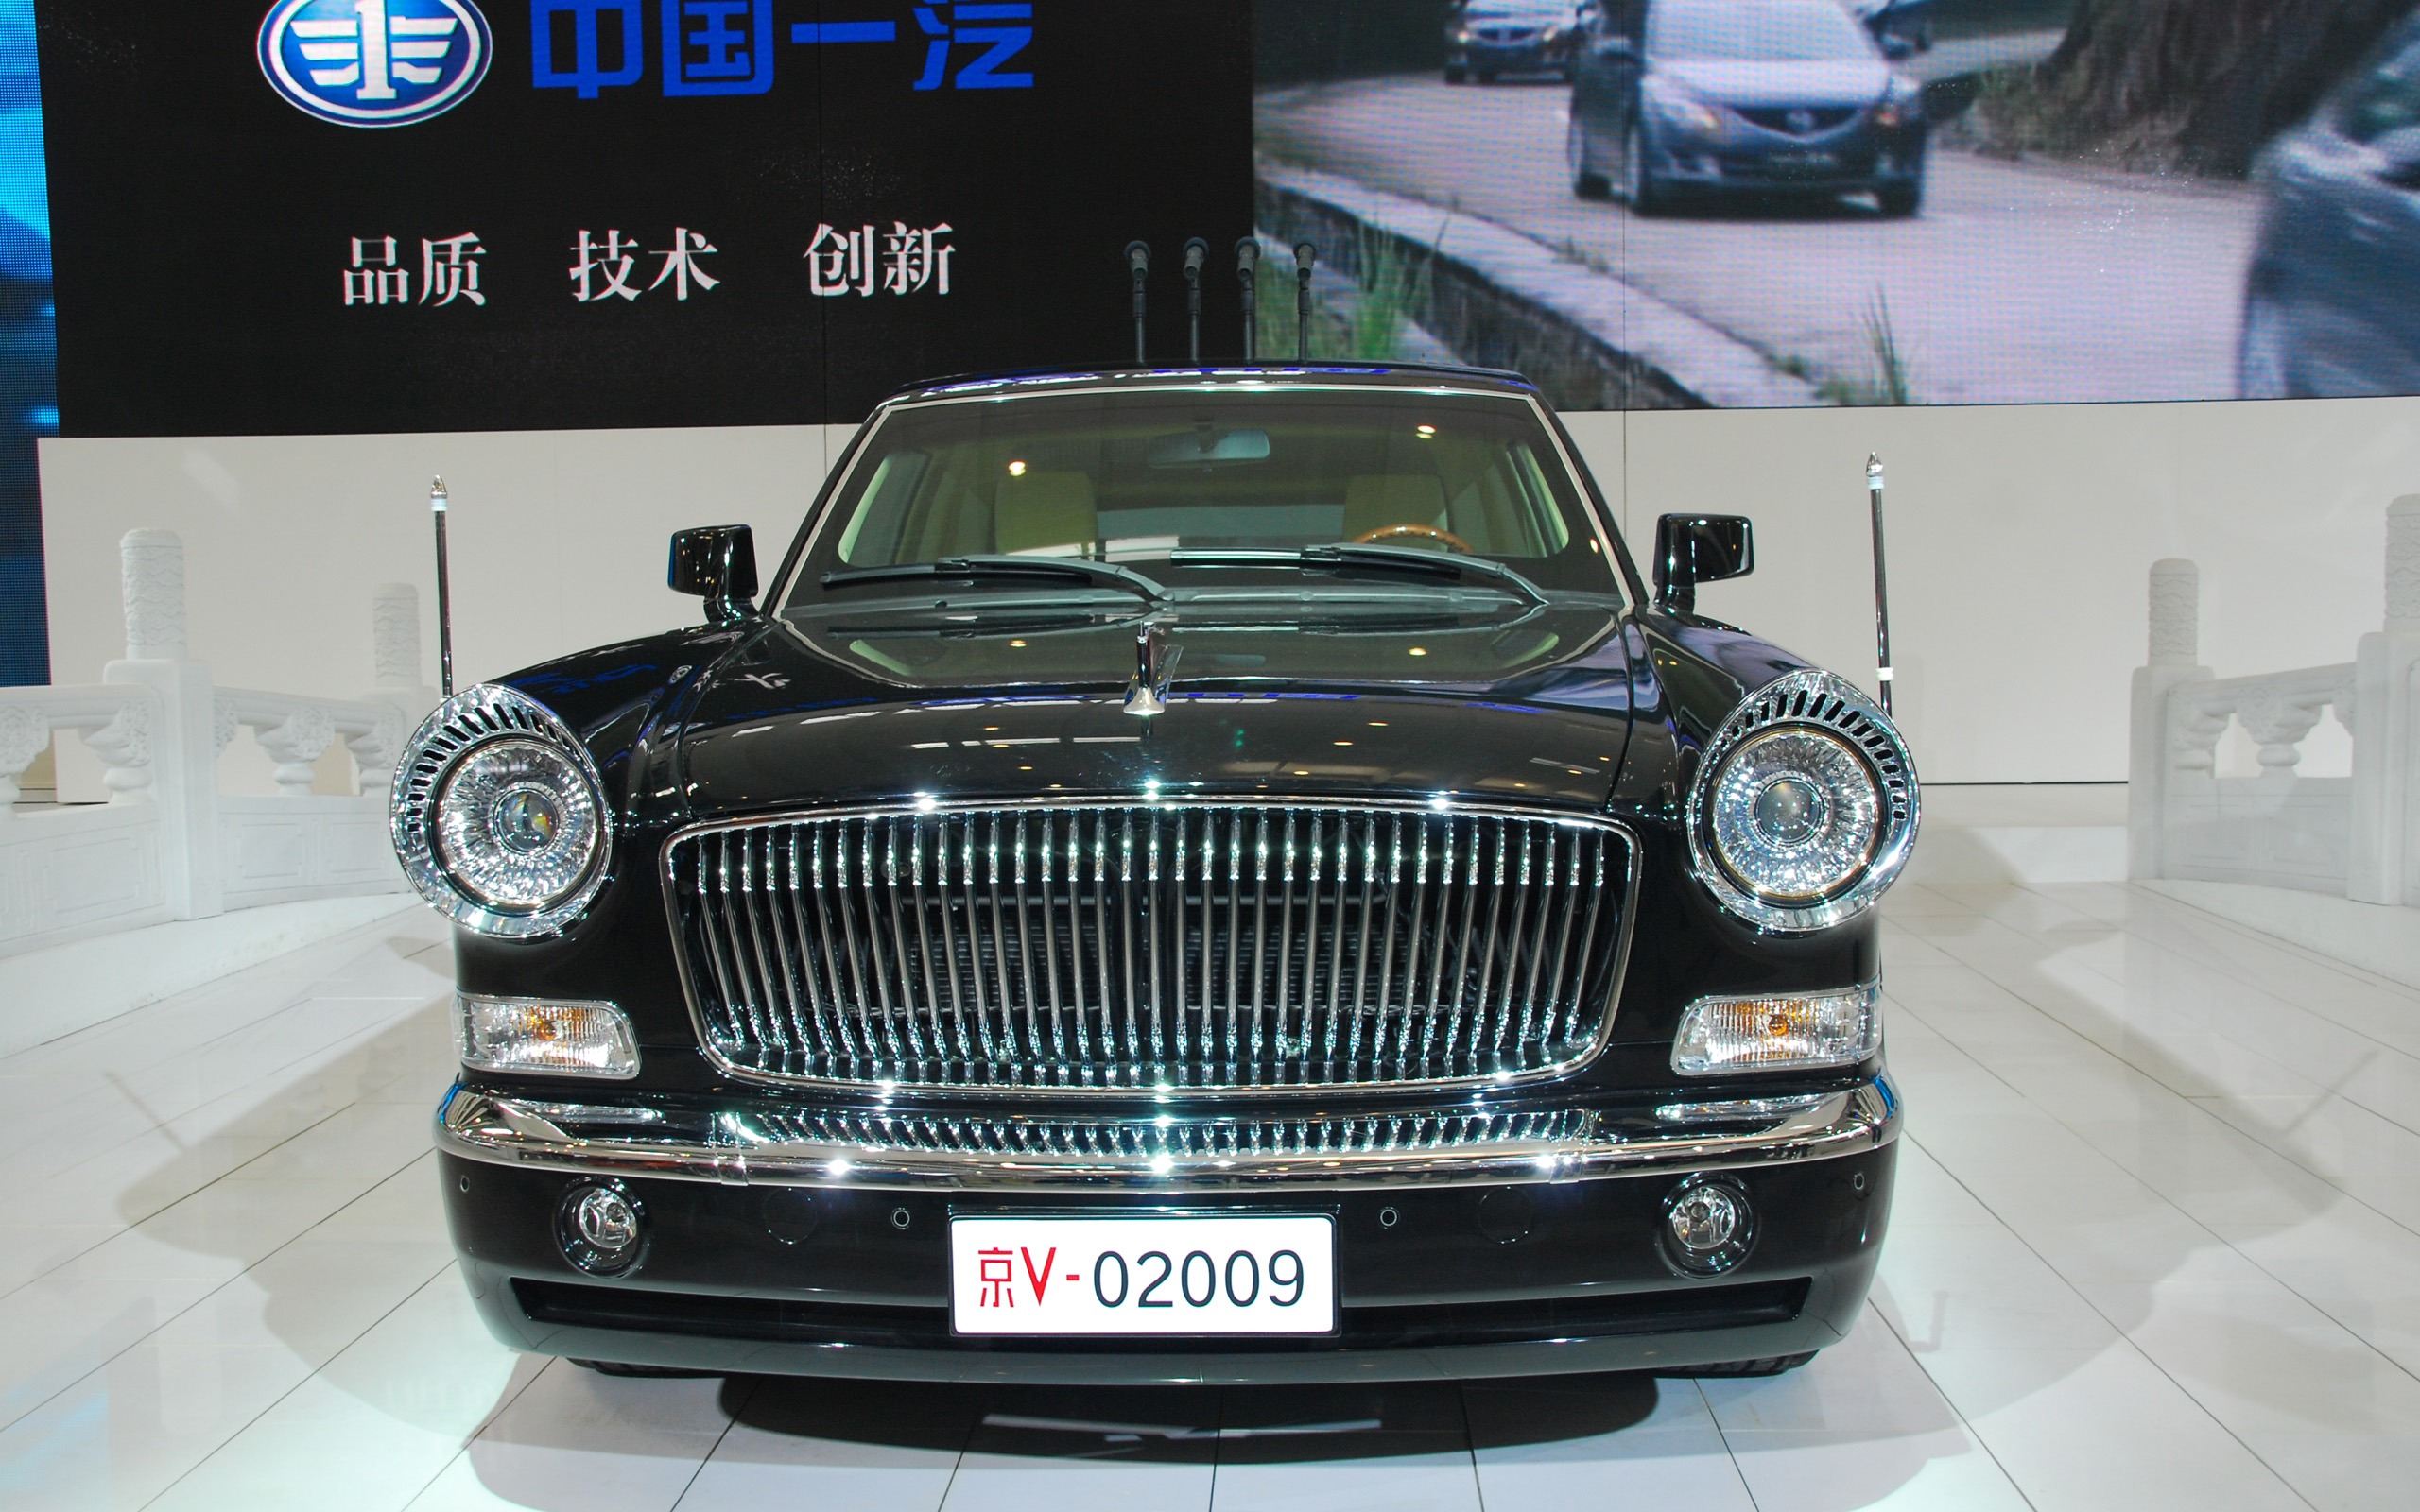 2010 Beijing International Auto Show (1) (z321x123 works) #2 - 2560x1600